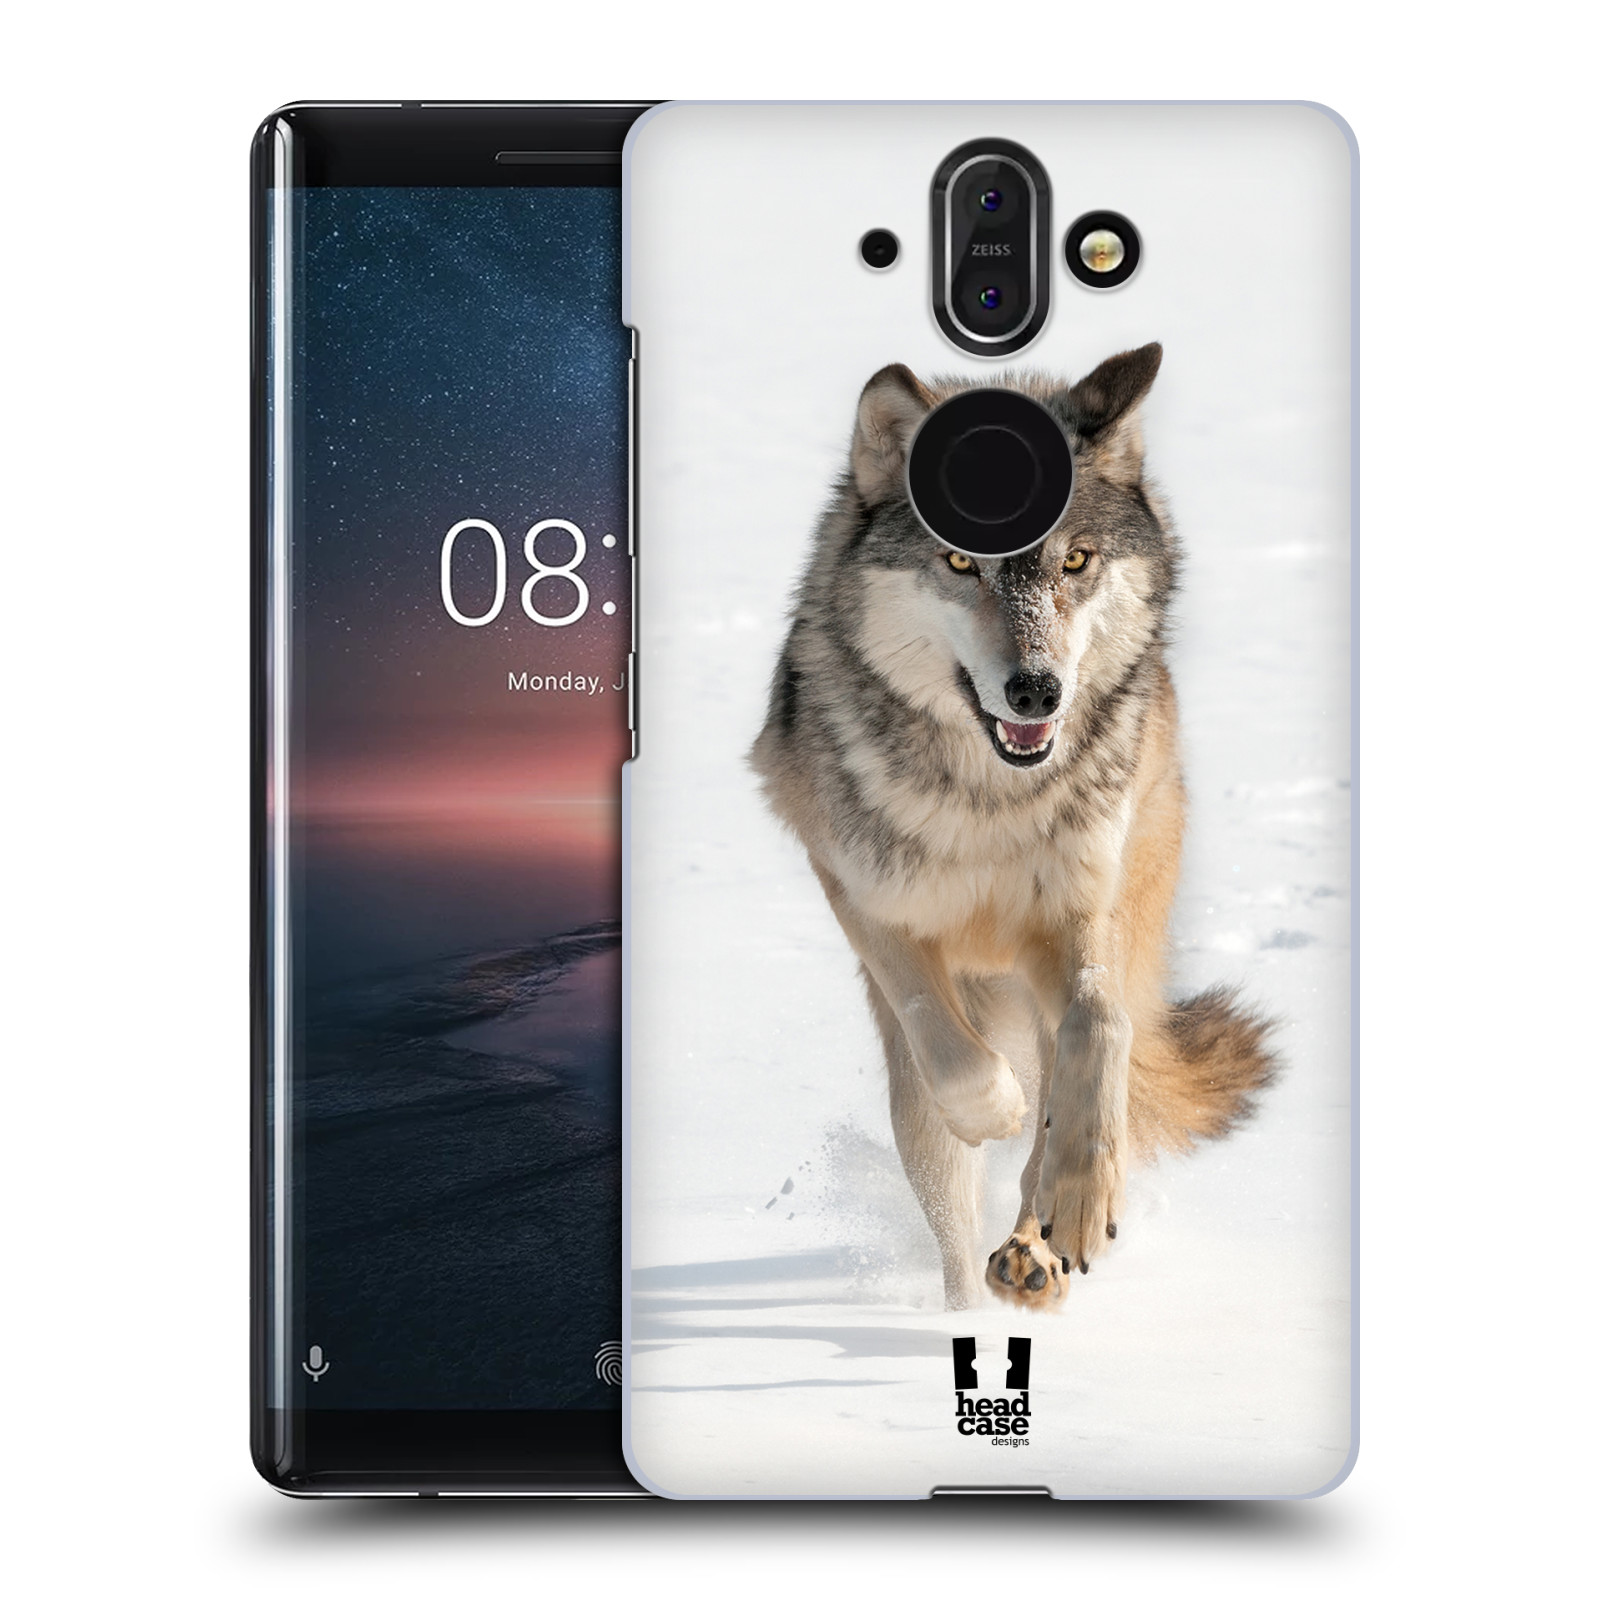 Zadní obal pro mobil Nokia 8 Sirocco - HEAD CASE - Svět zvířat divoký vlk